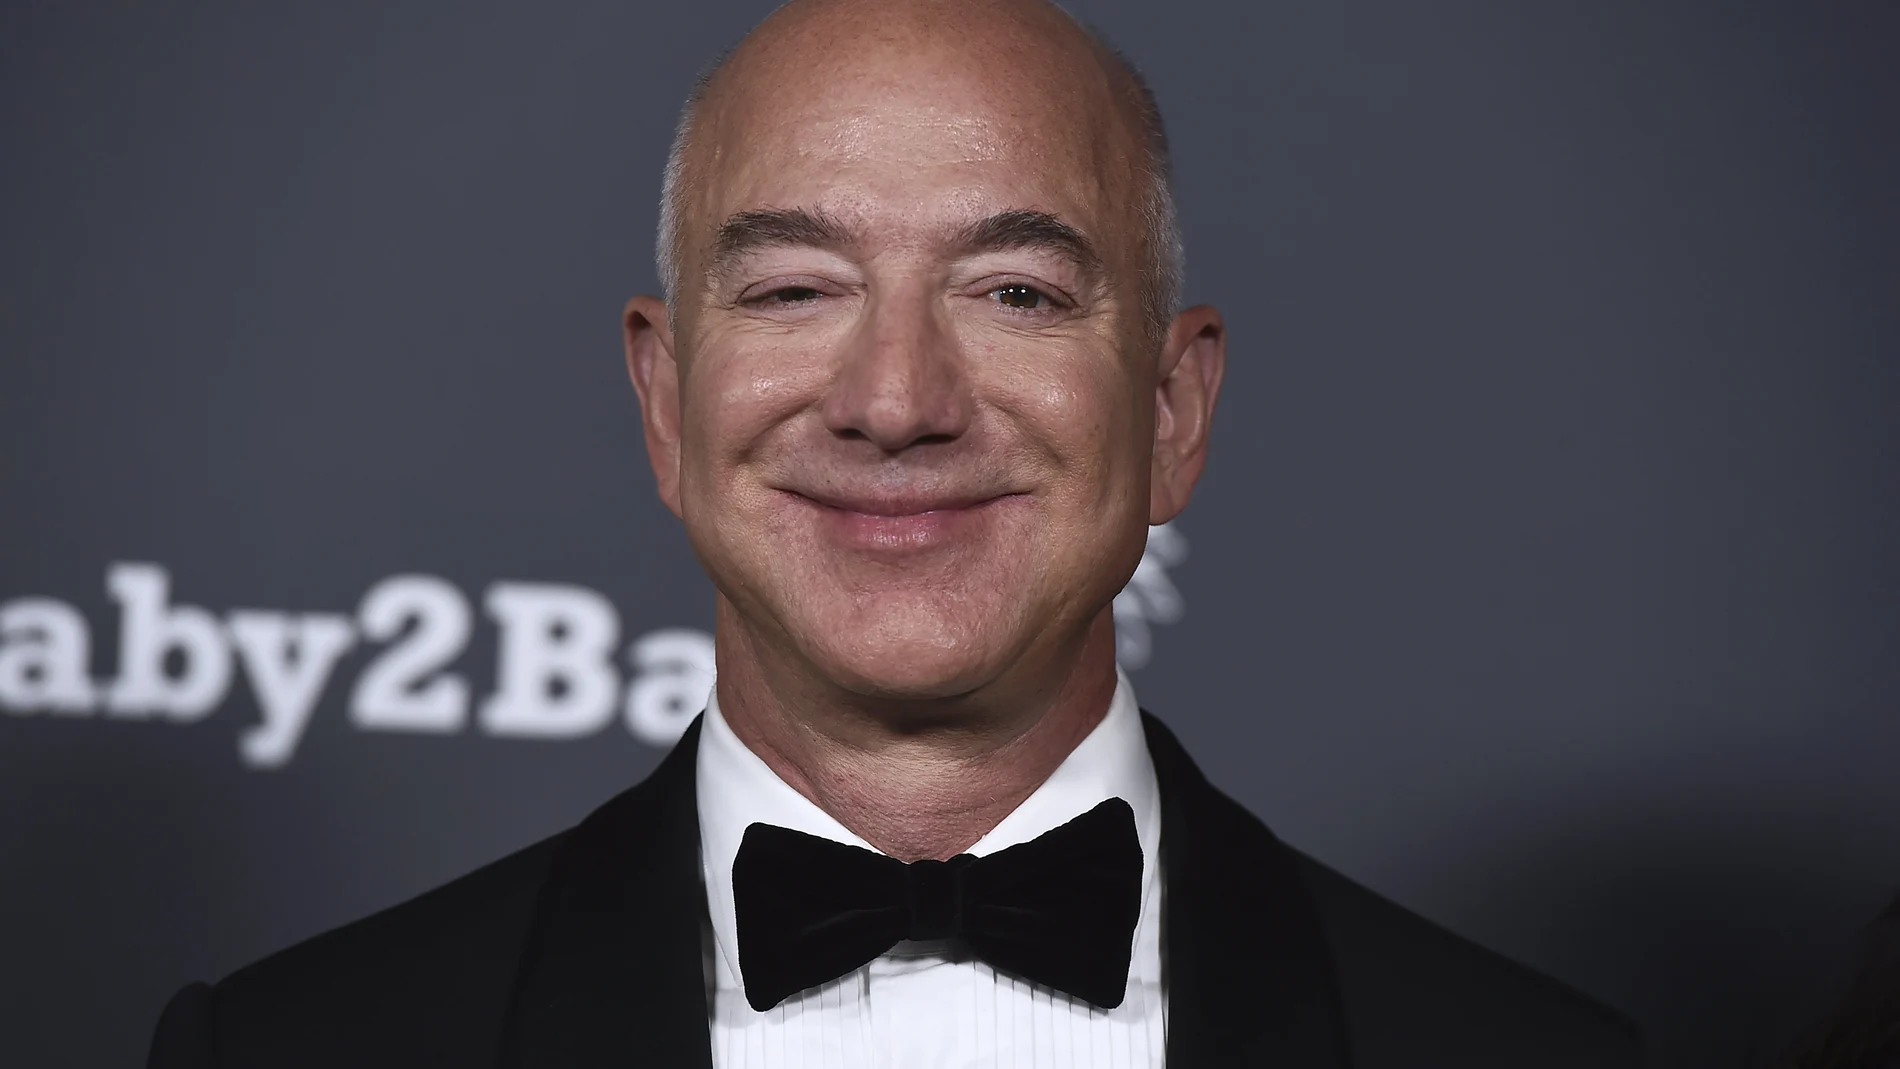 Jeff Bezos sonríe en la Gala "Baby2Baby", en el Pacific Design Center. Sábado 13 de noviembre de 2021. West Hollywood, California. Foto de Jordan Strauss / Invision / AP